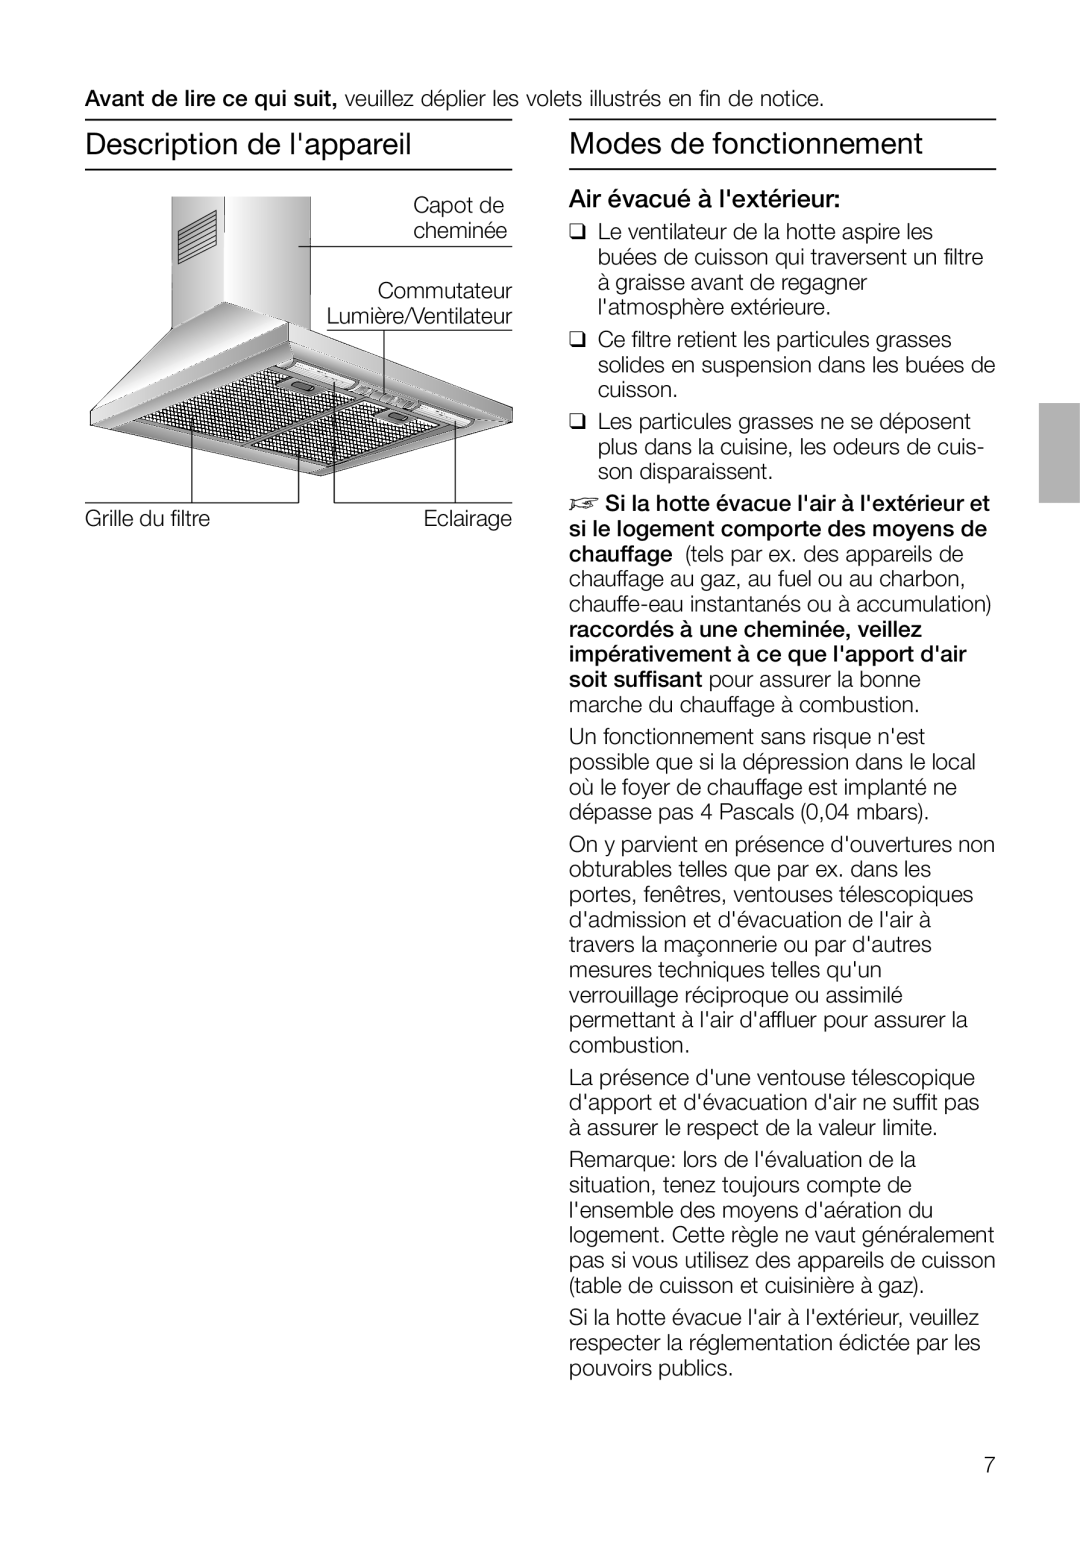 Bosch Appliances DKE 93 manual Description de lappareil, Modes de fonctionnement, Air évacué à lextérieur 